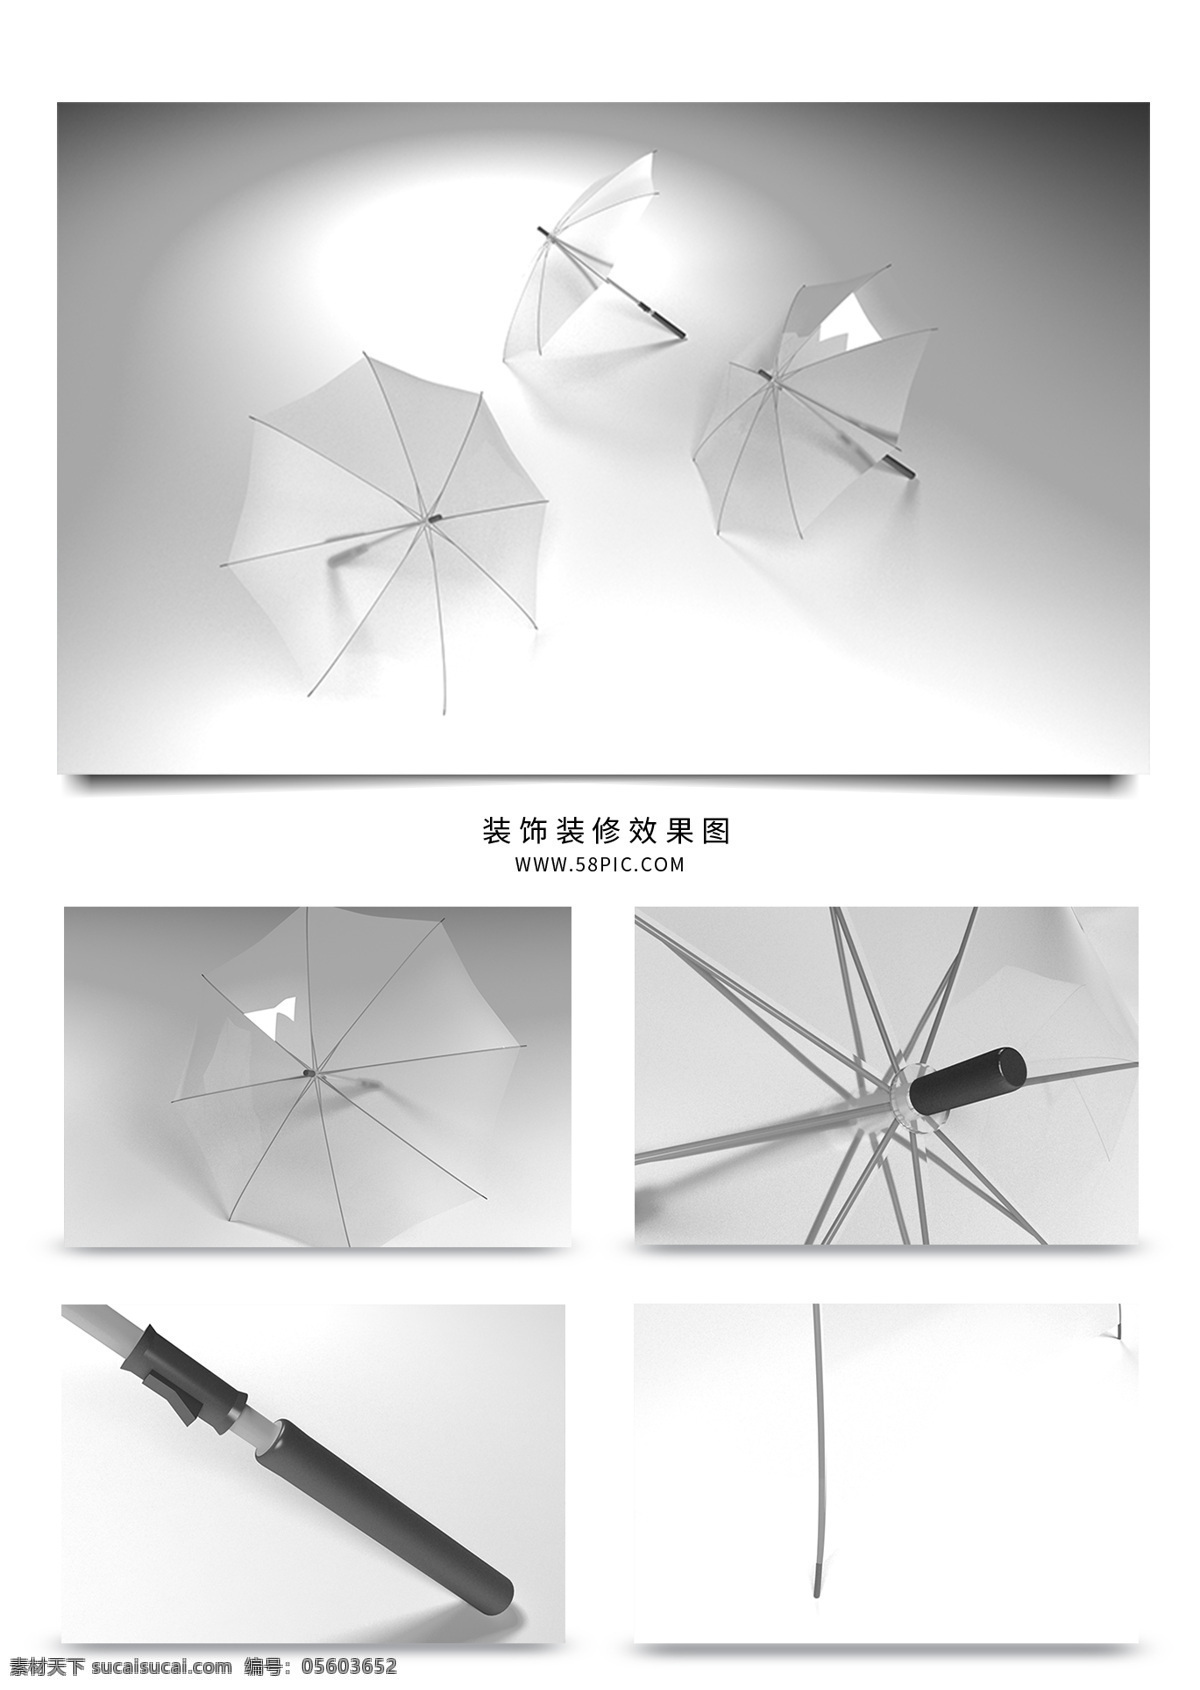 小 清新 透明 雨伞 3d 模型 max 3d模型 小清新 透明雨伞 日式雨伞 现代雨伞 时尚雨伞 塑料 生活用品 工业产品 日用品